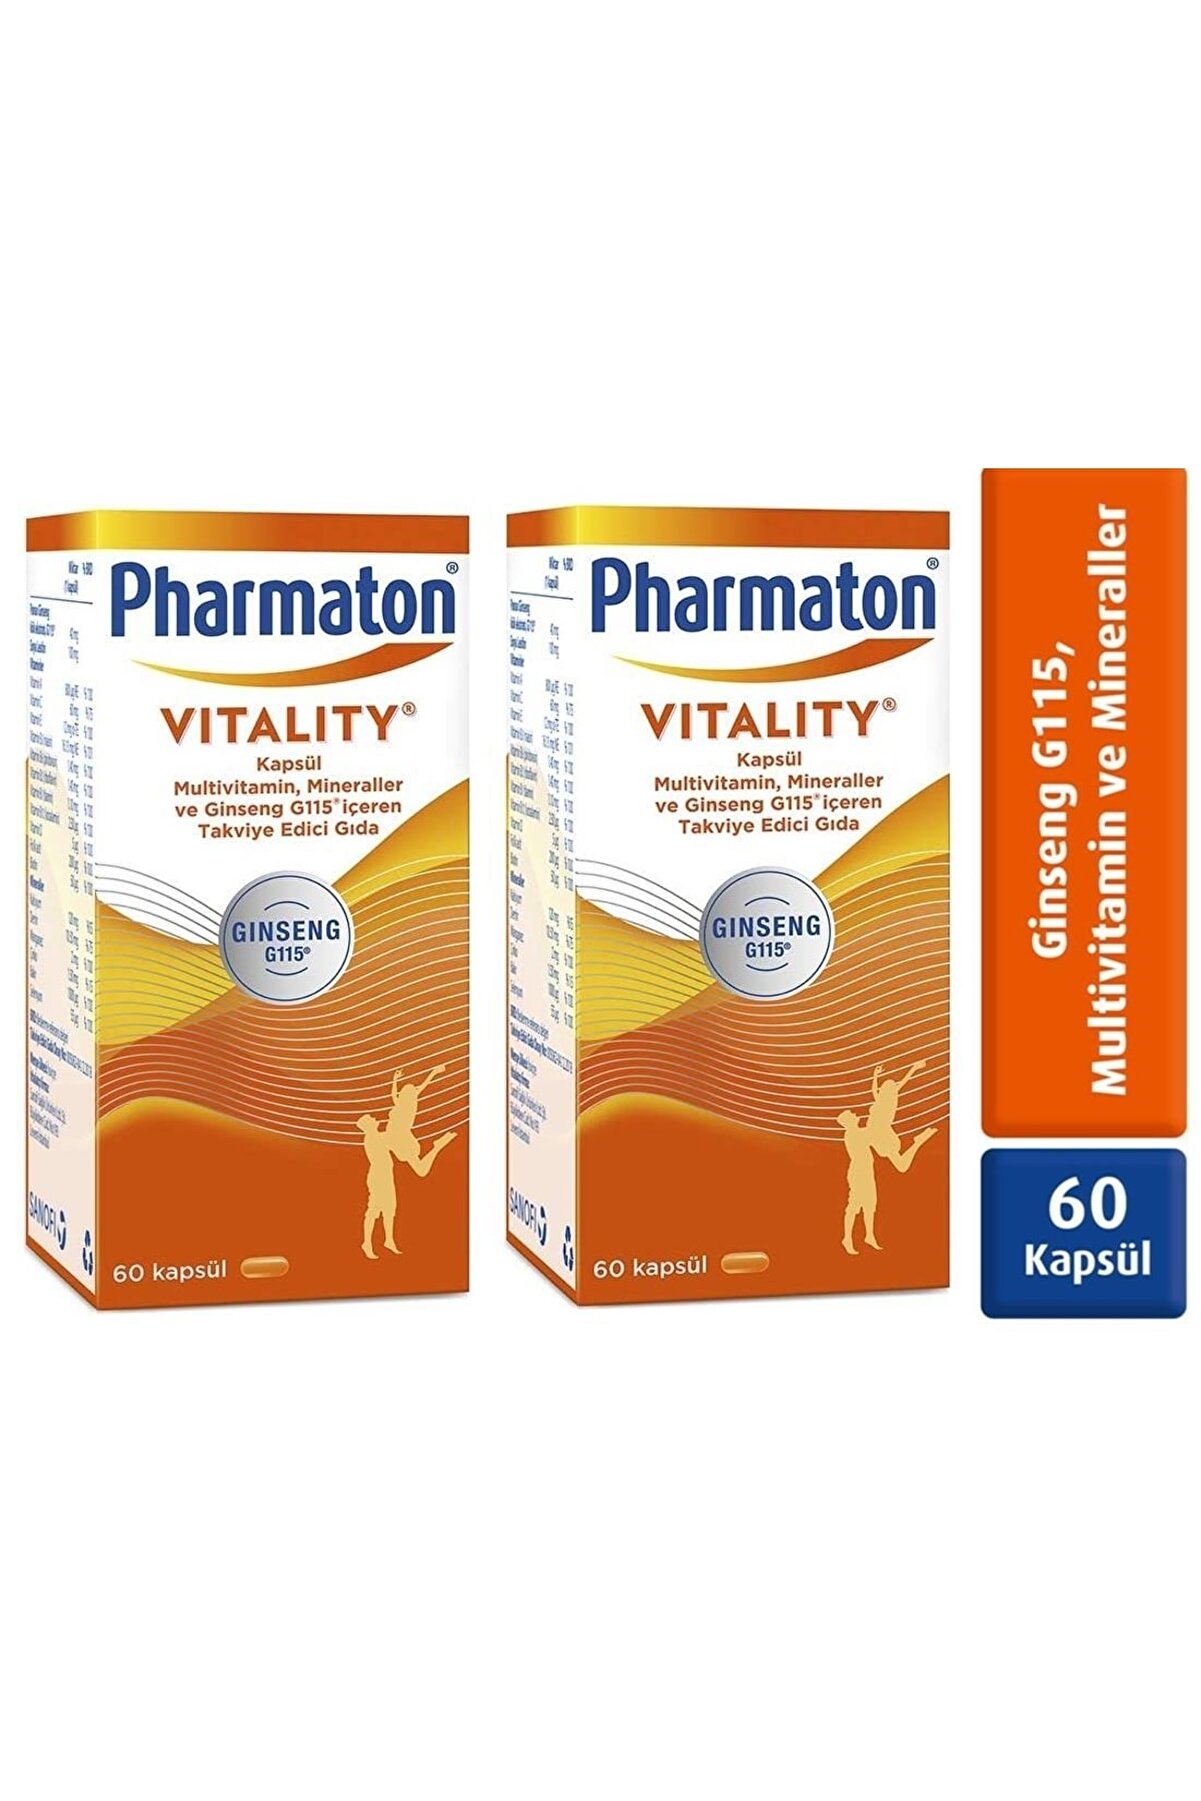 Pharmaton Vitality 60 Kapsül 2 Adet